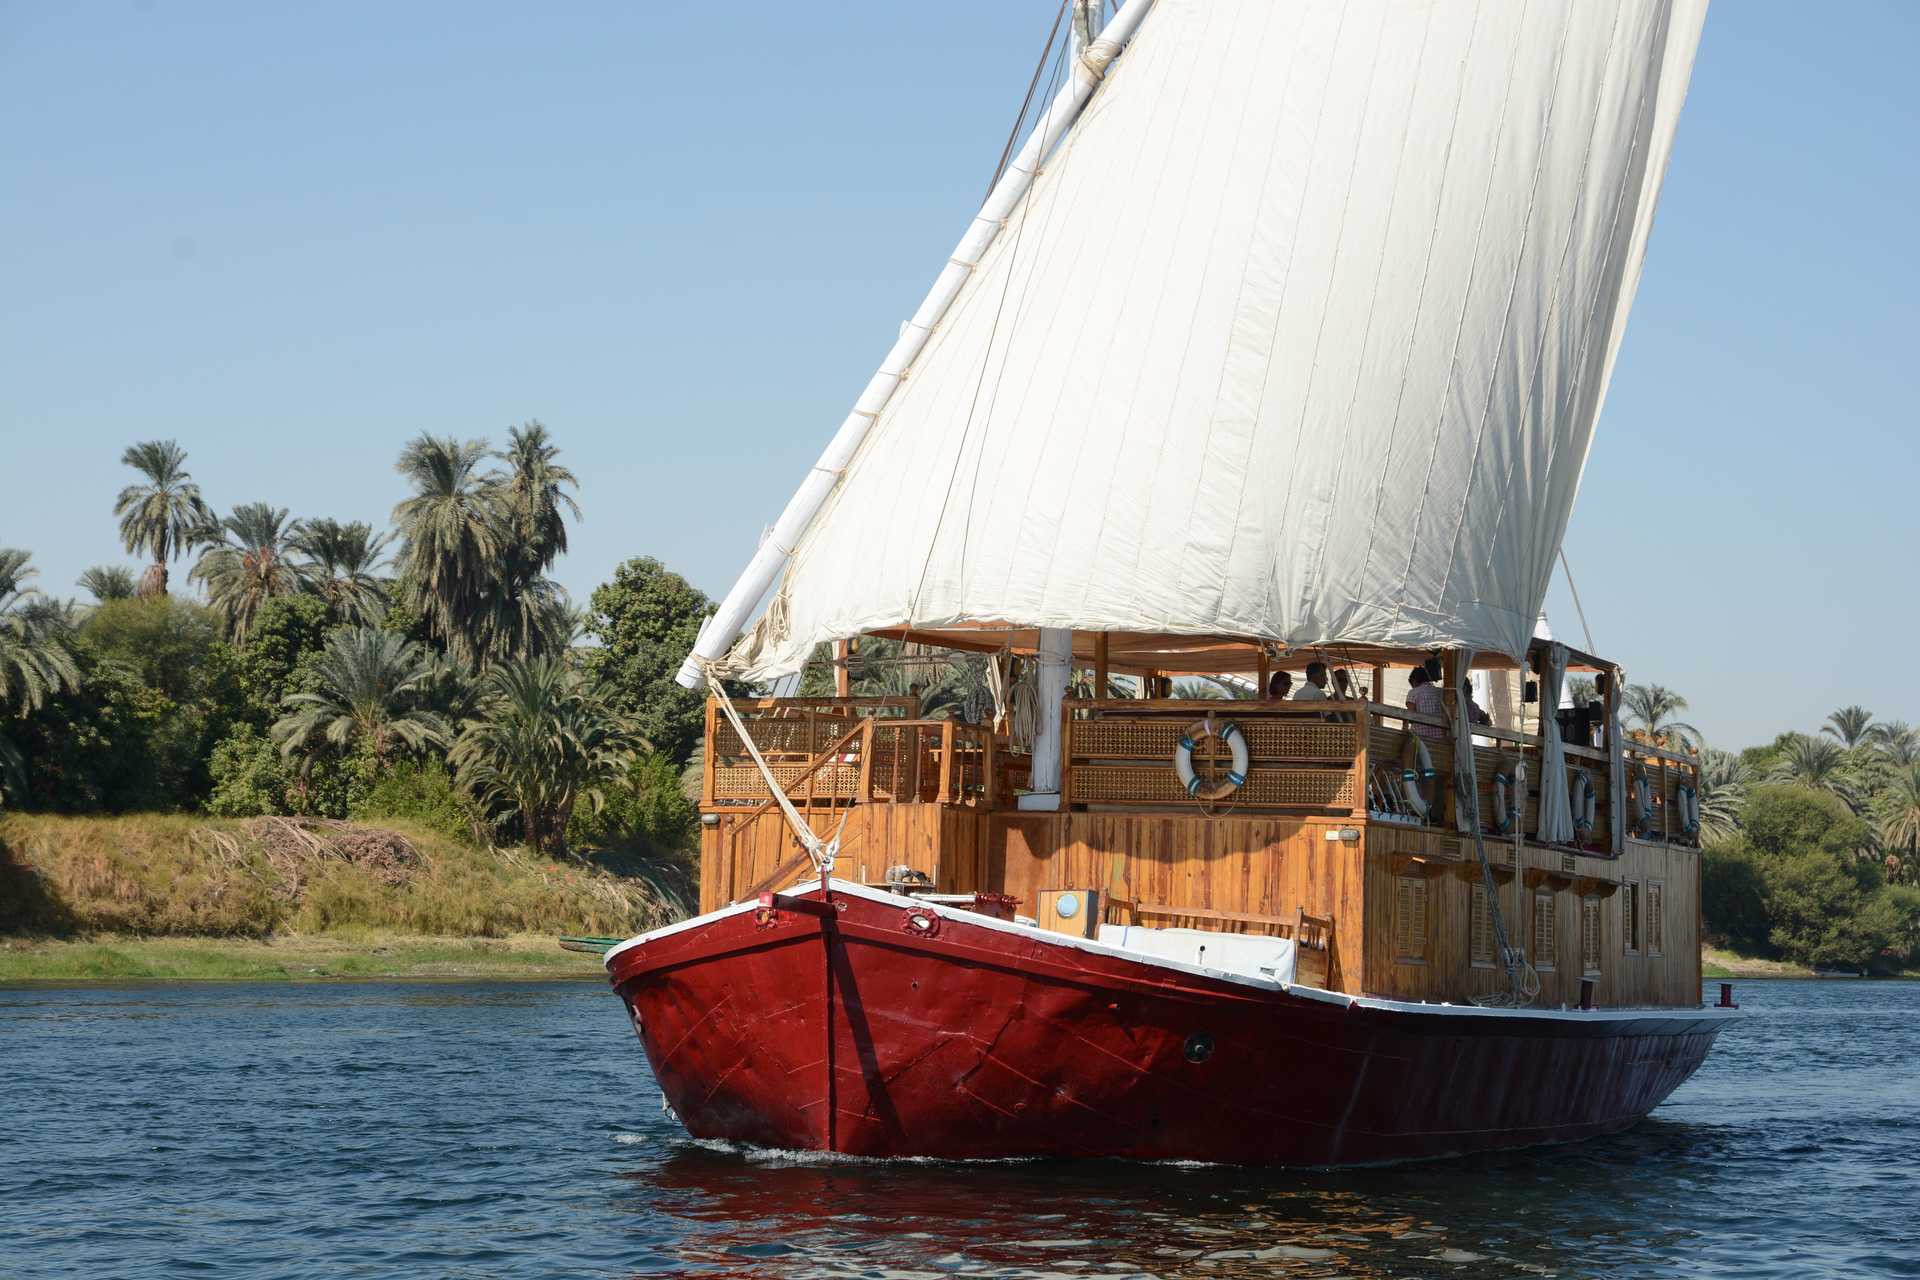 Voyage découverte - Sandal et rando, confort sur le Nil